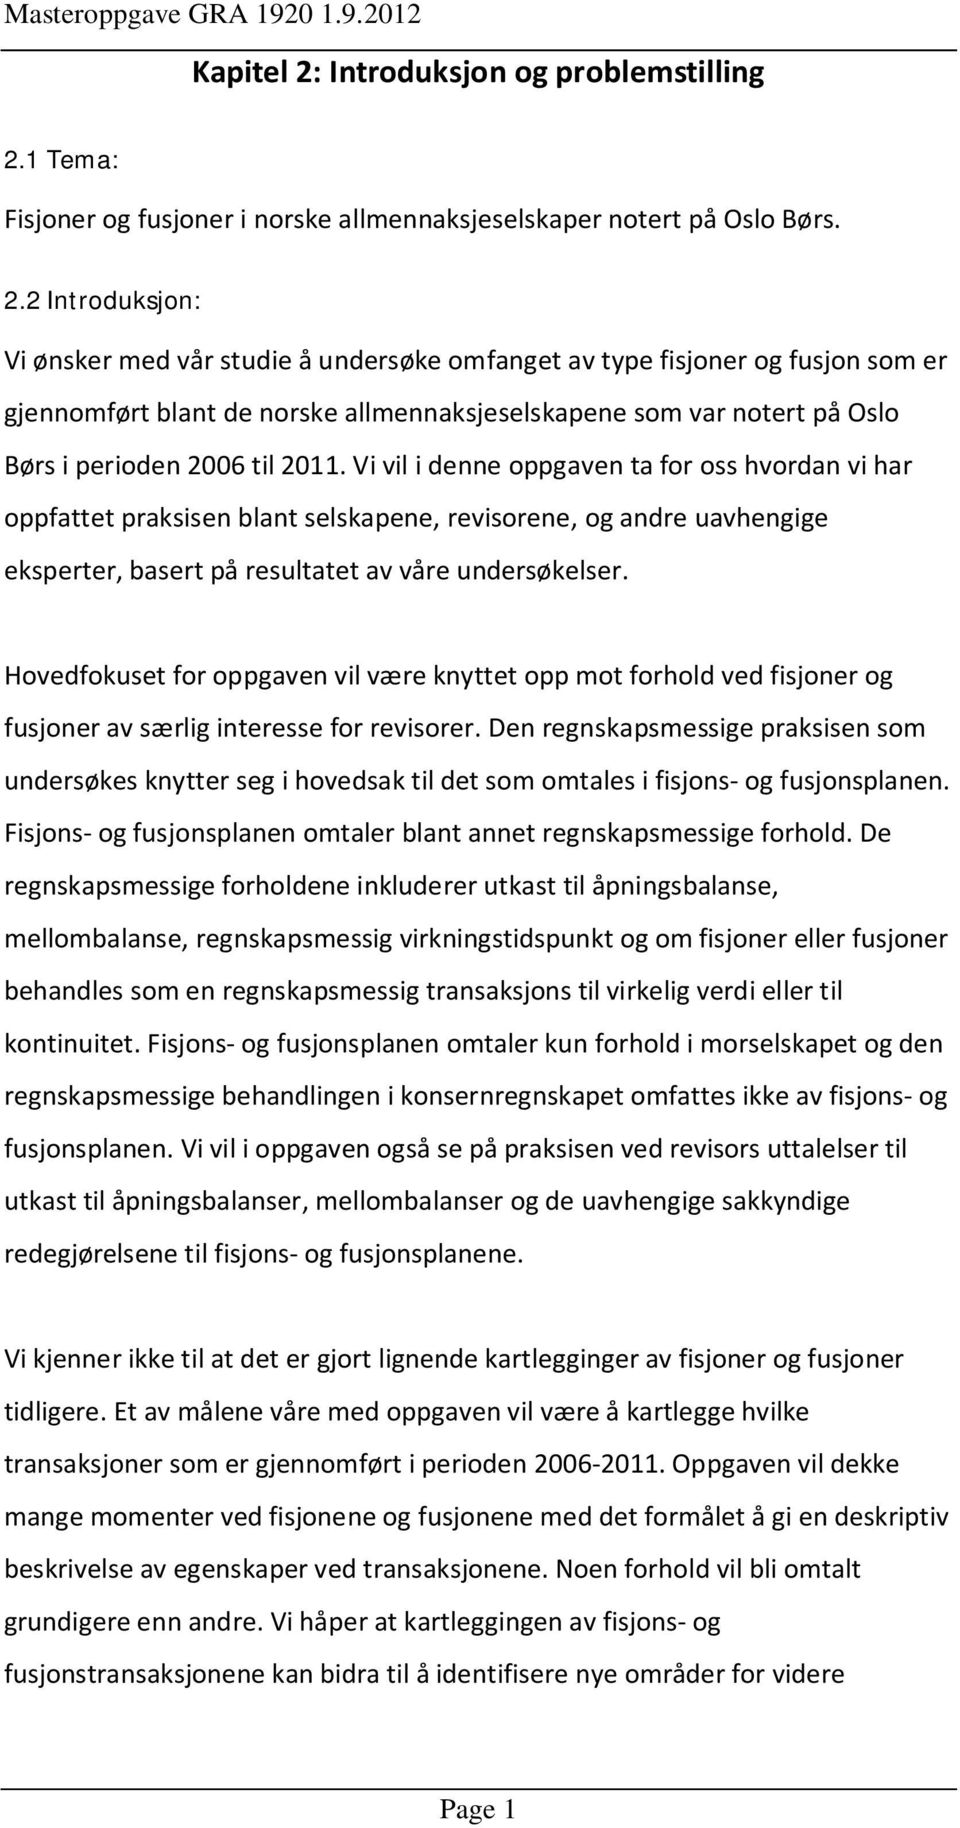 1 Tema: Fisjoner og fusjoner i norske allmennaksjeselskaper notert på Oslo Børs. 2.